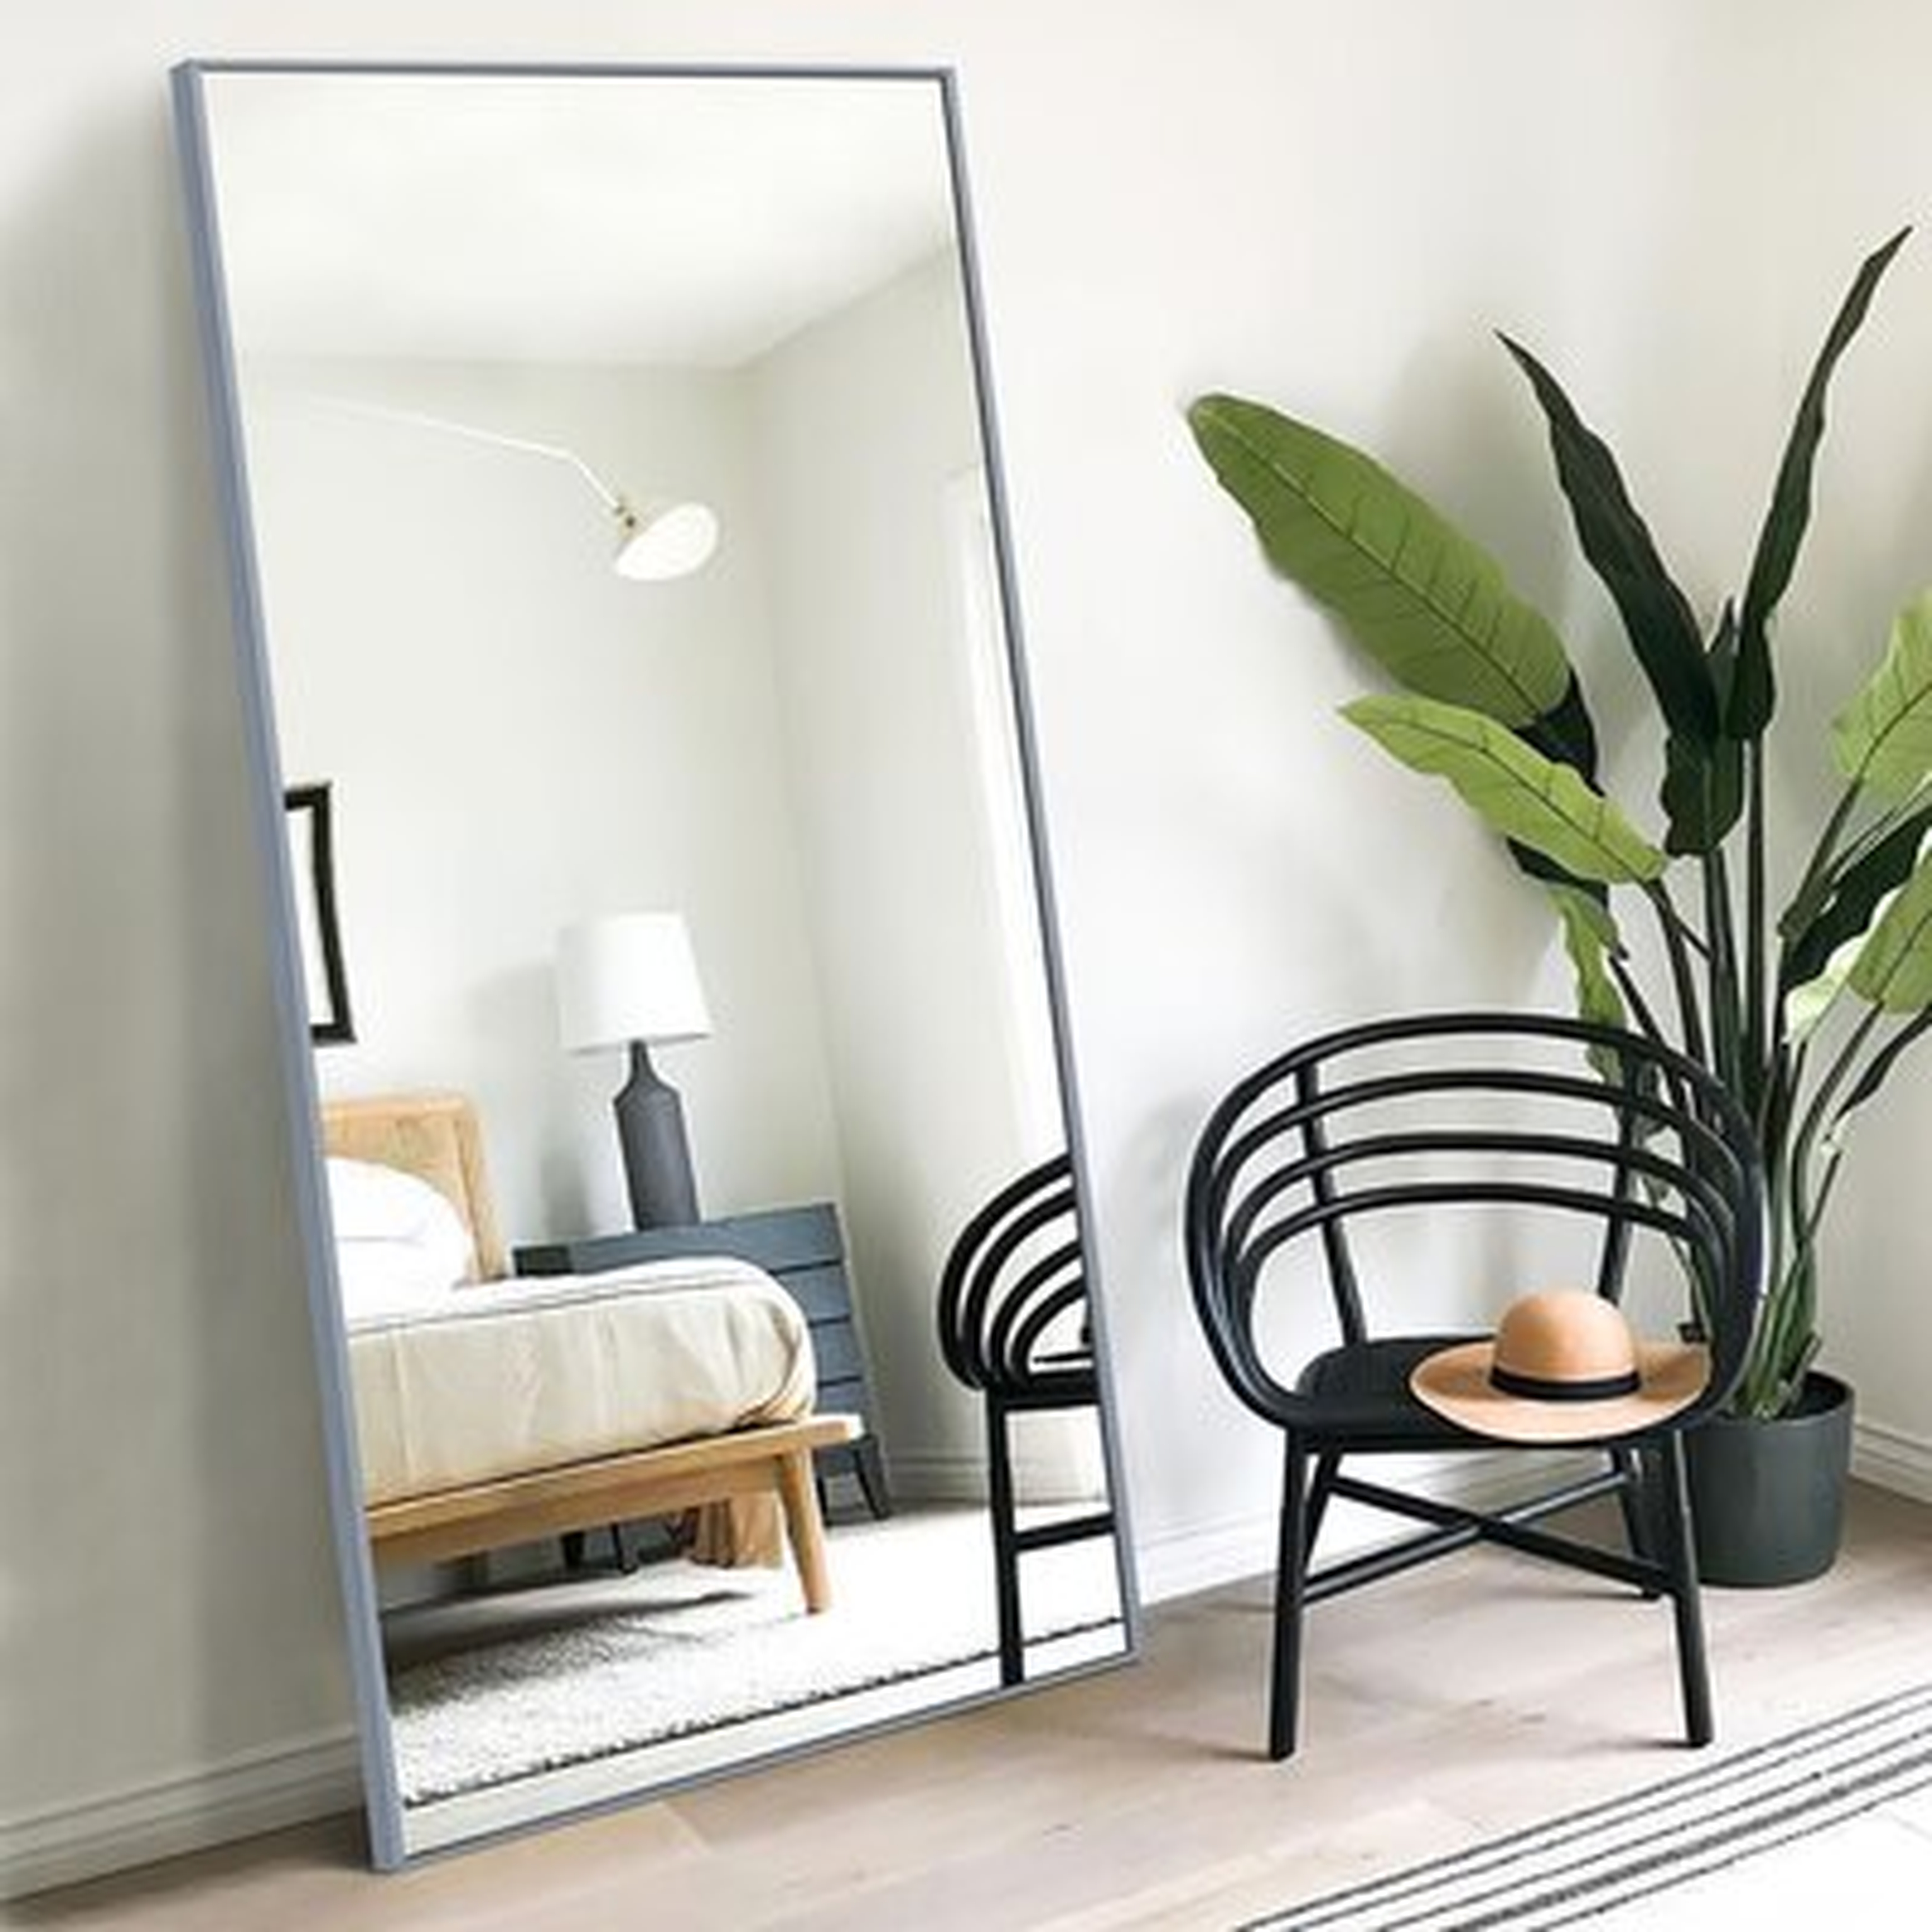 Framed Full Length Mirror - Wayfair